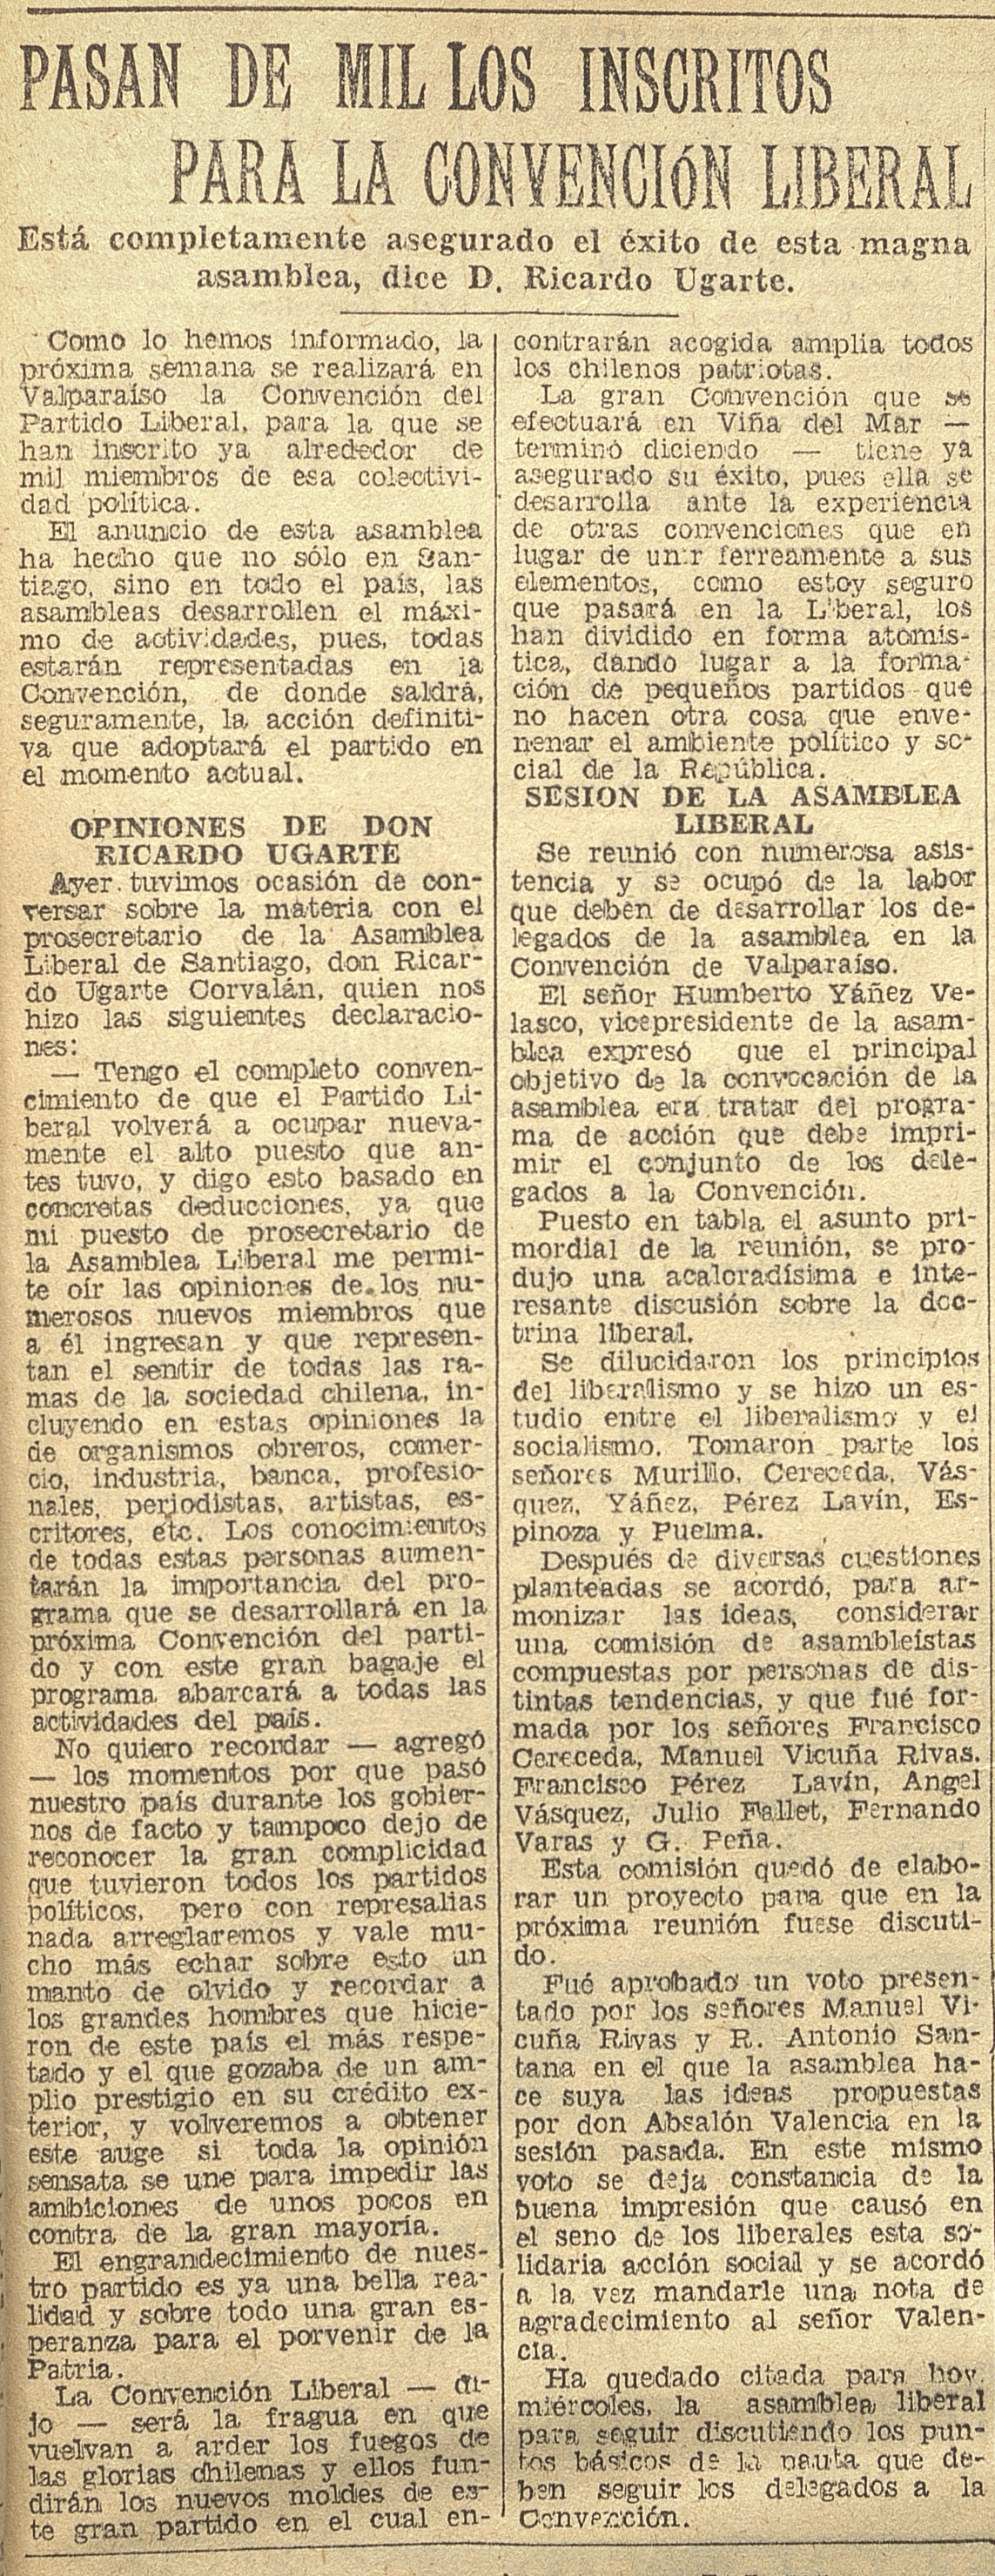 Pasan de Mil los inscritos para la Convención Liberal, Diario El Mercurio, Santiago, miércoles 4 de octubre de 1933.